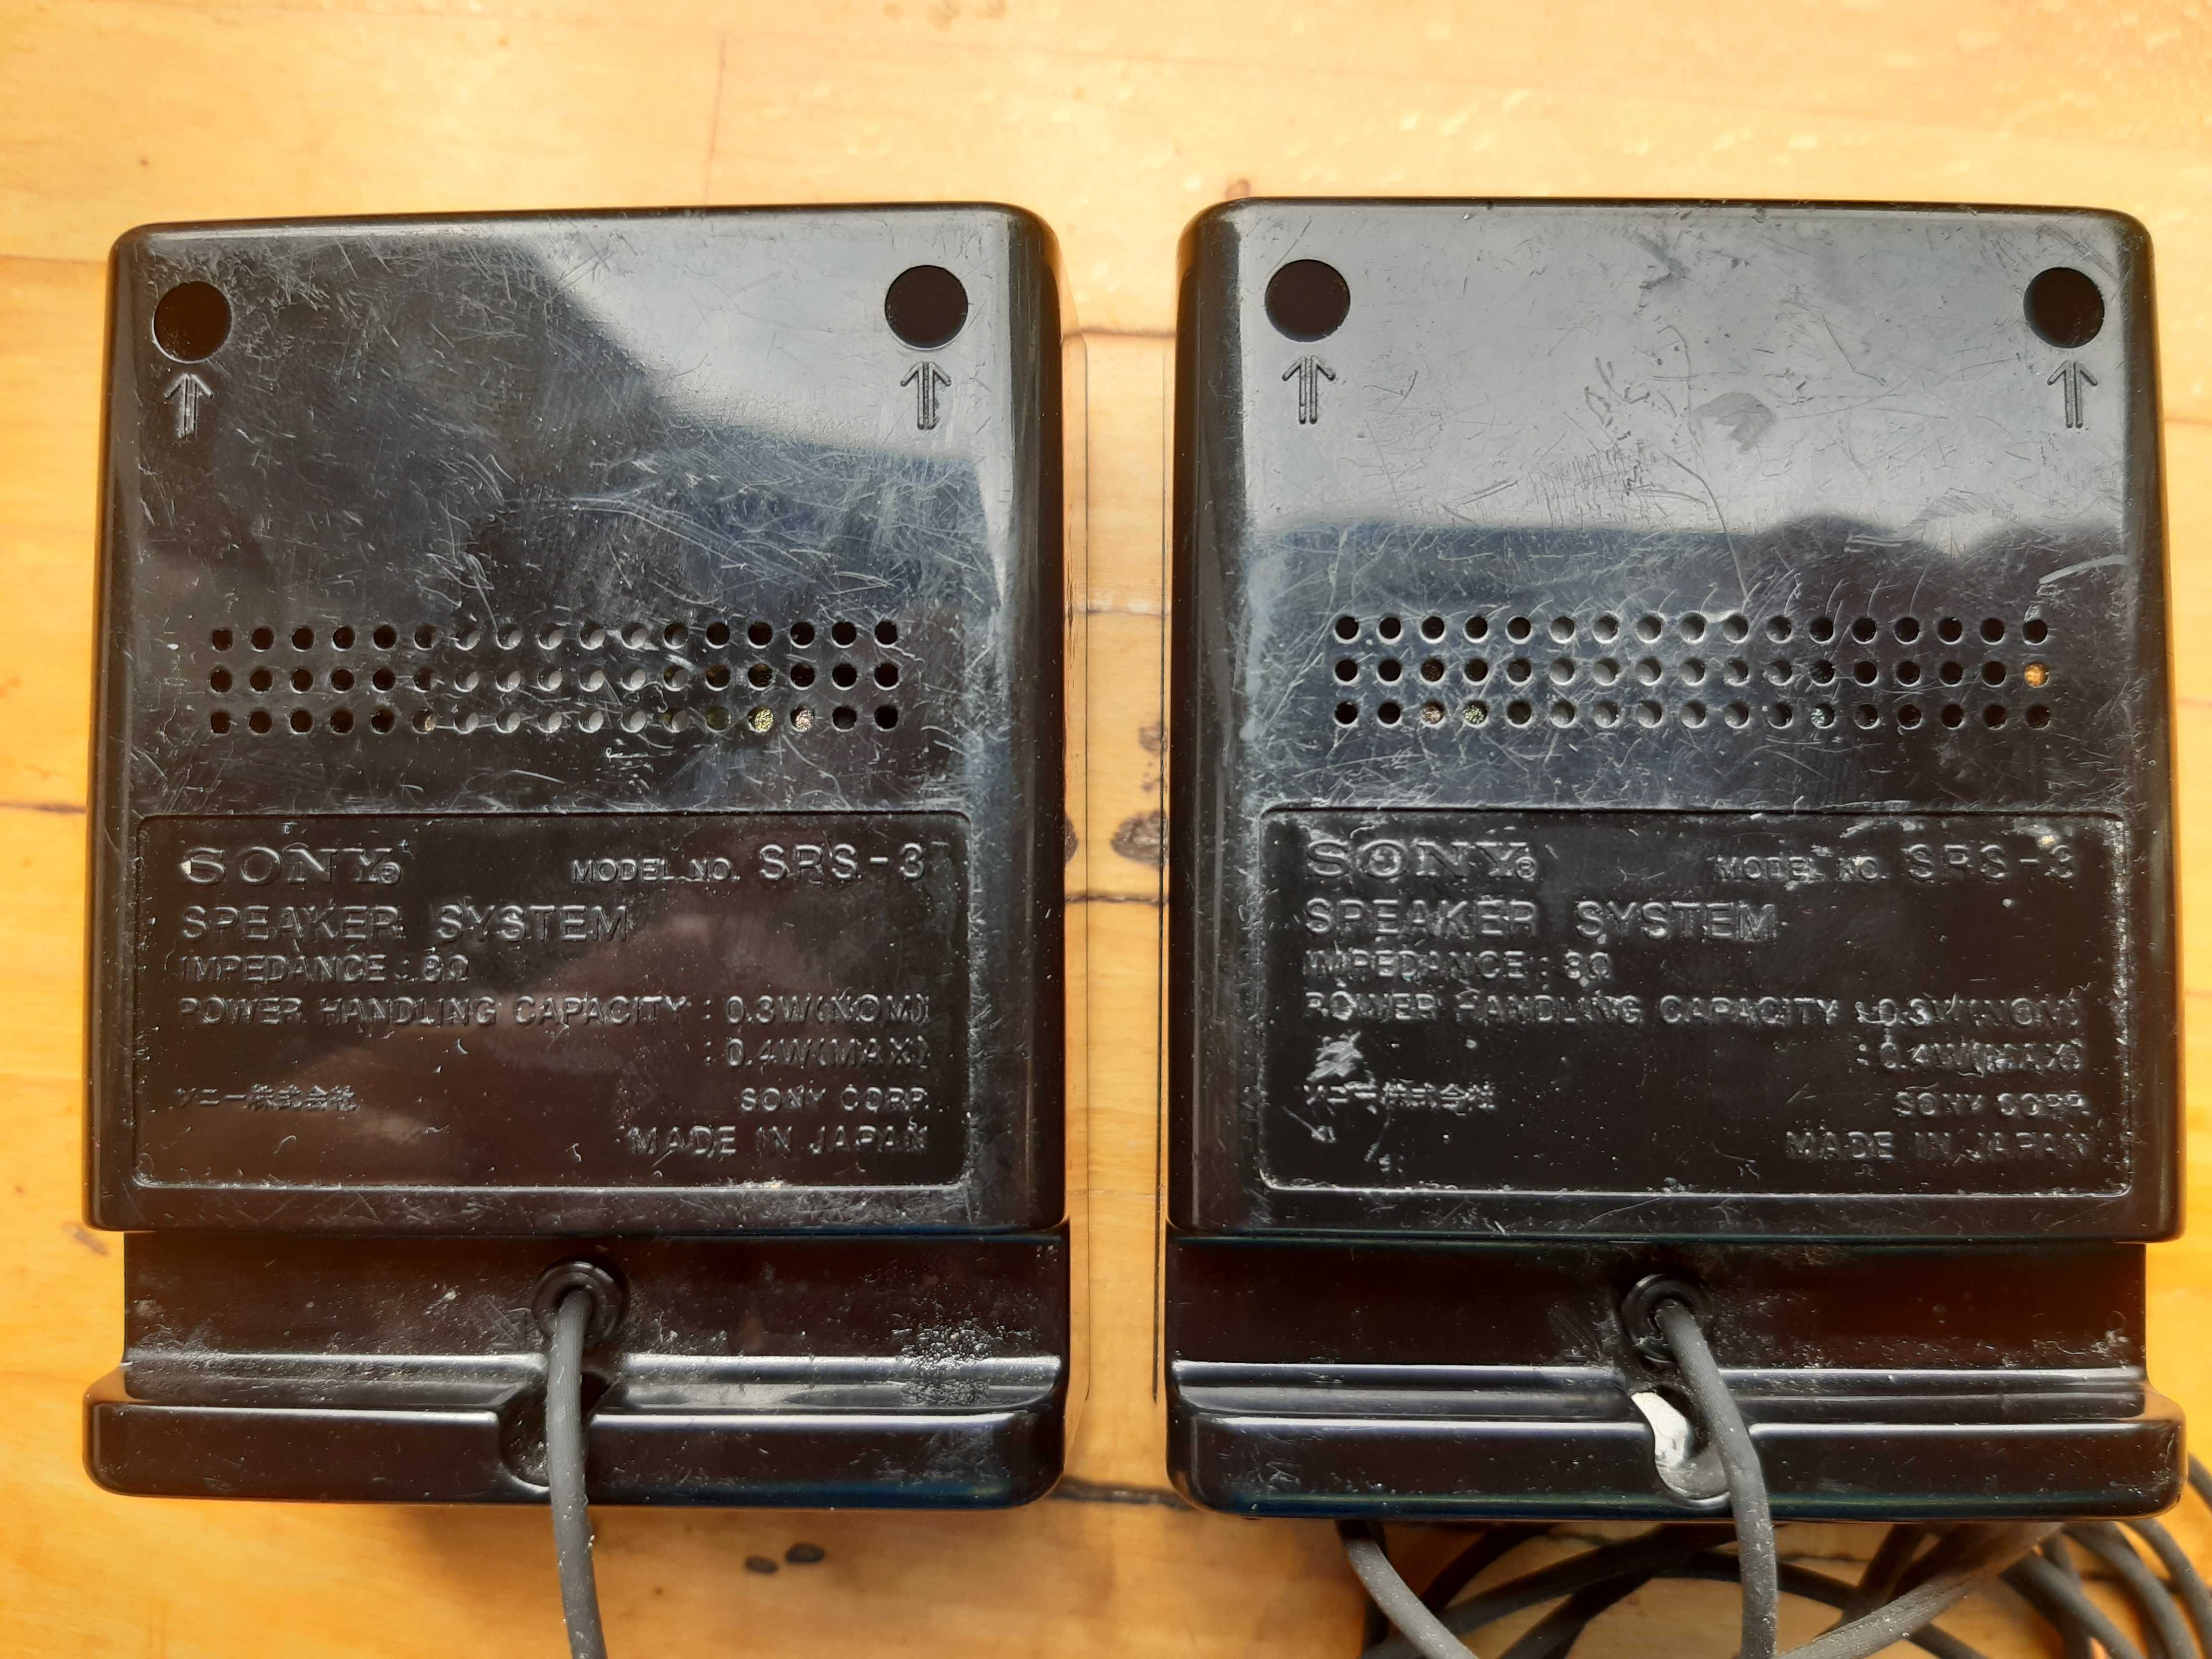 Minigłośniki Sony SRS-3 vintage